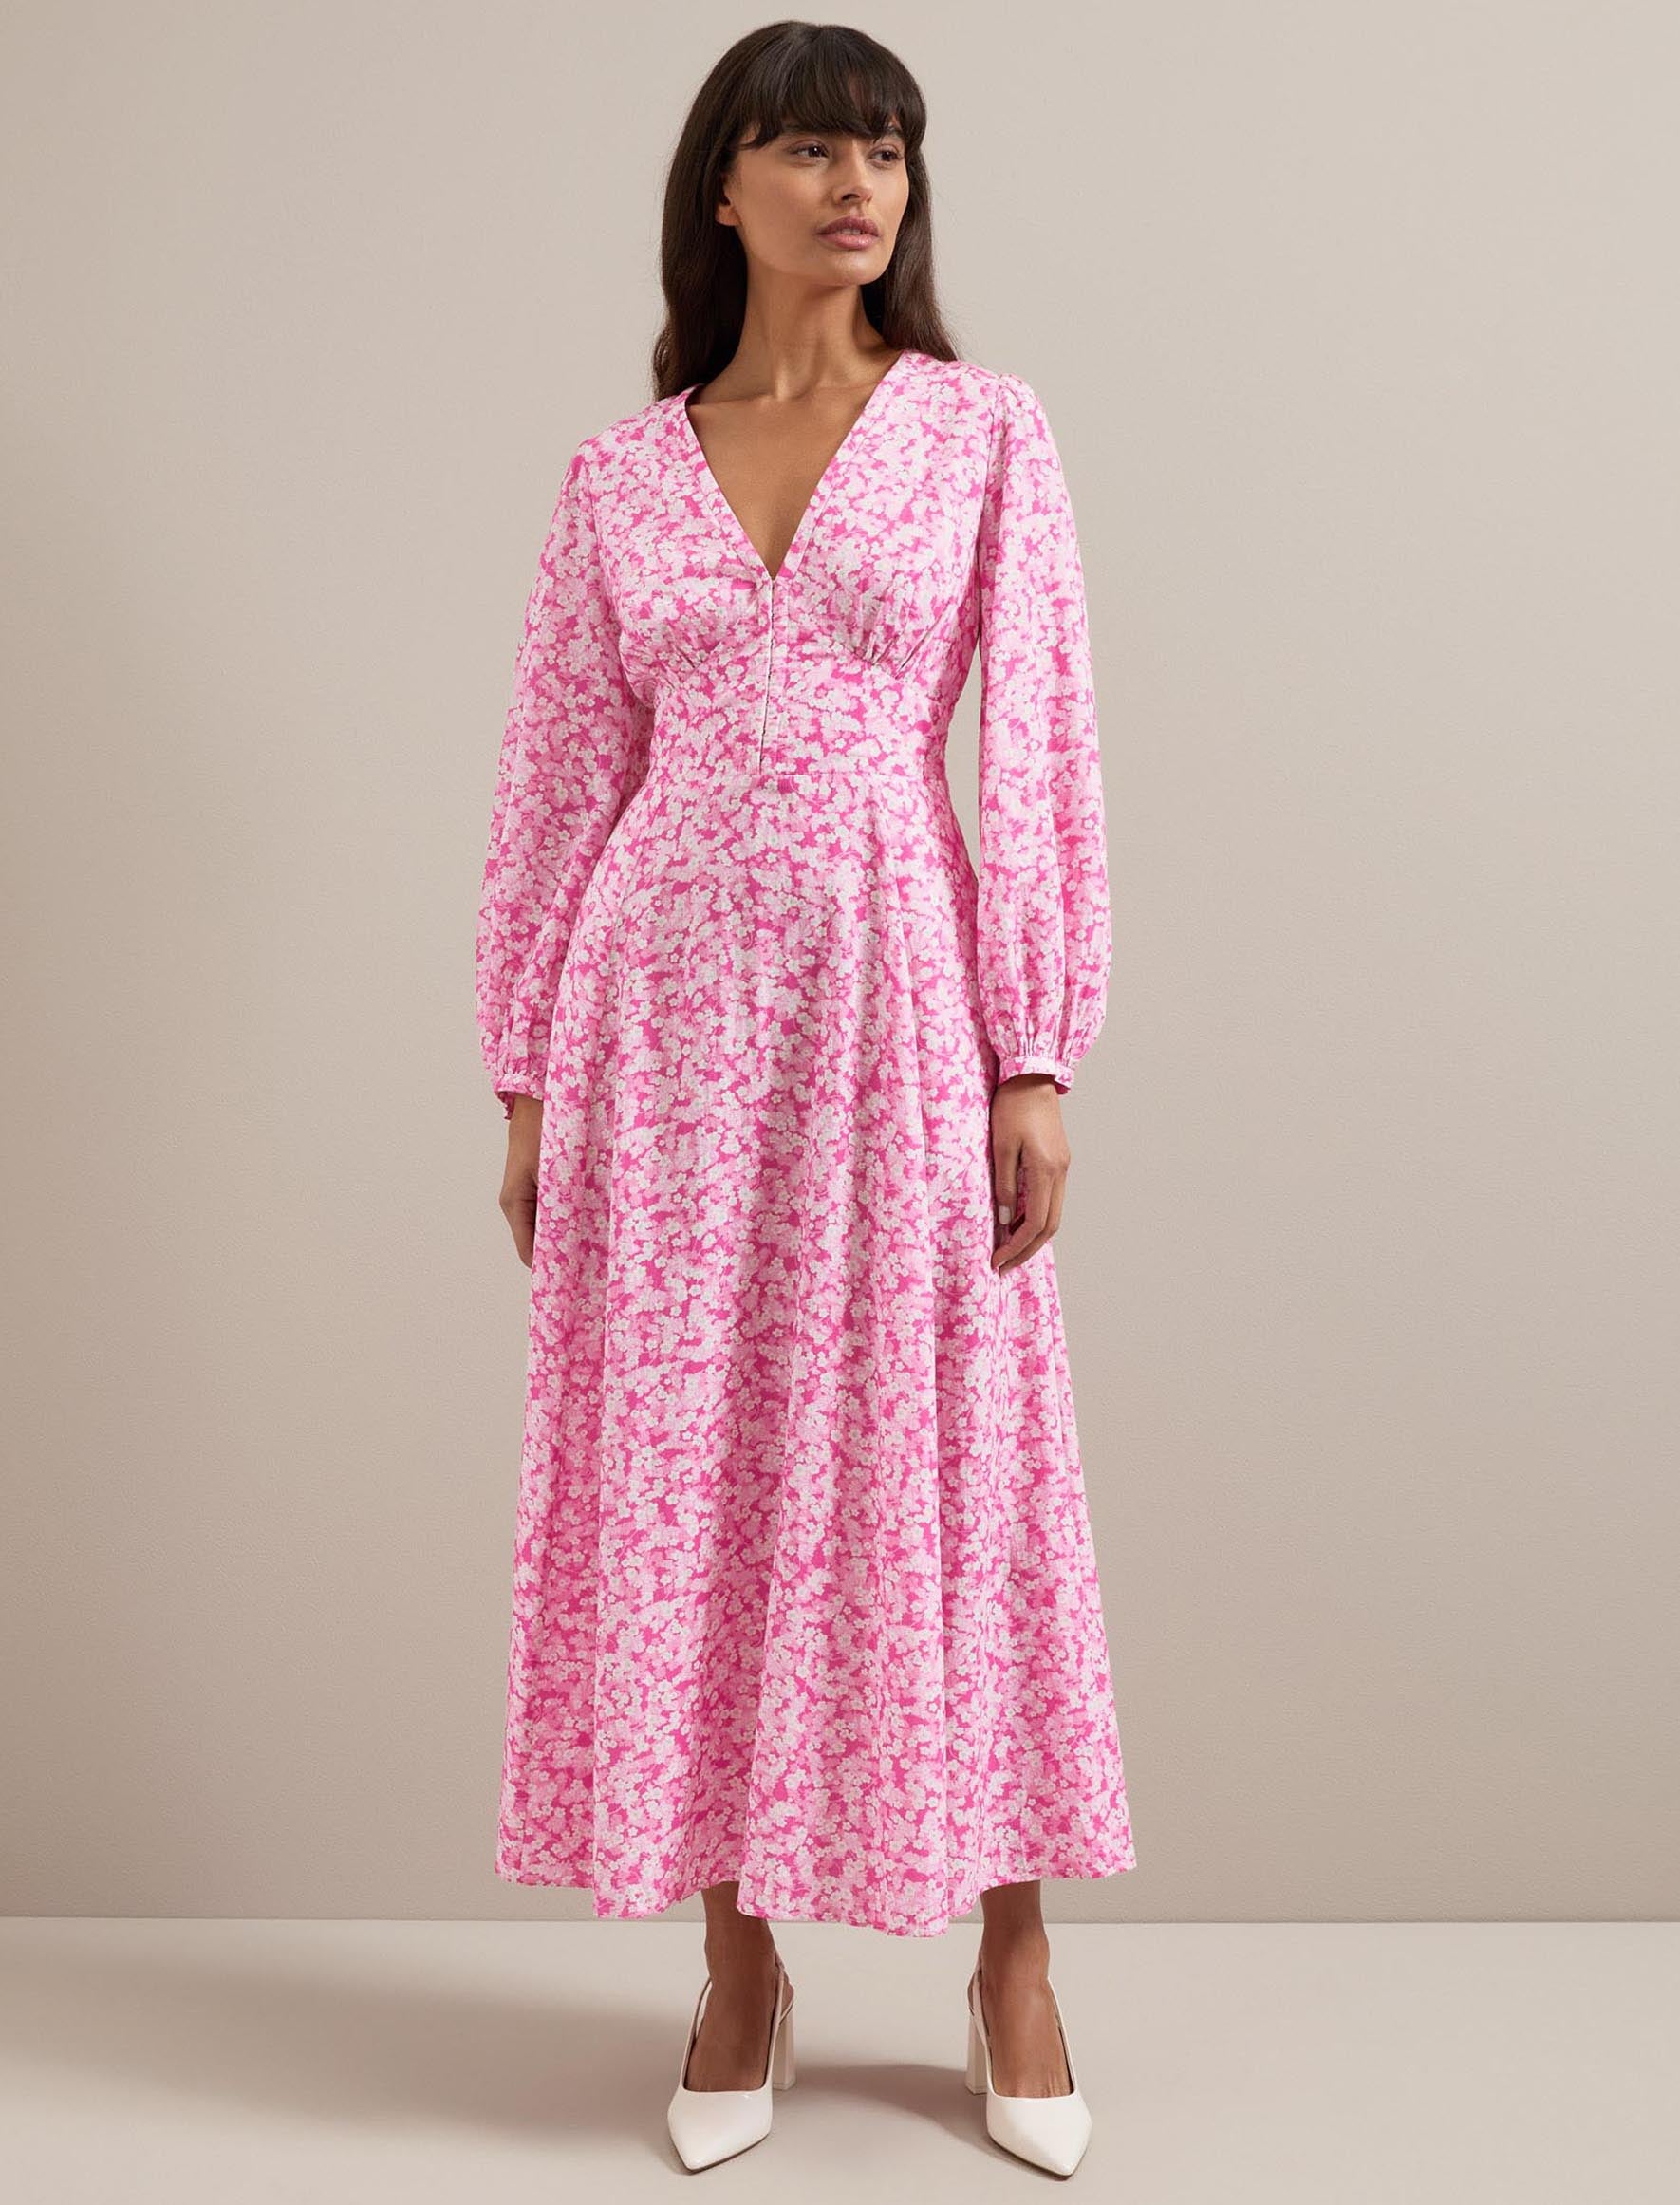 Cefinn Cora Cotton Blend Maxi Dress - Hot Pink Blossom Print